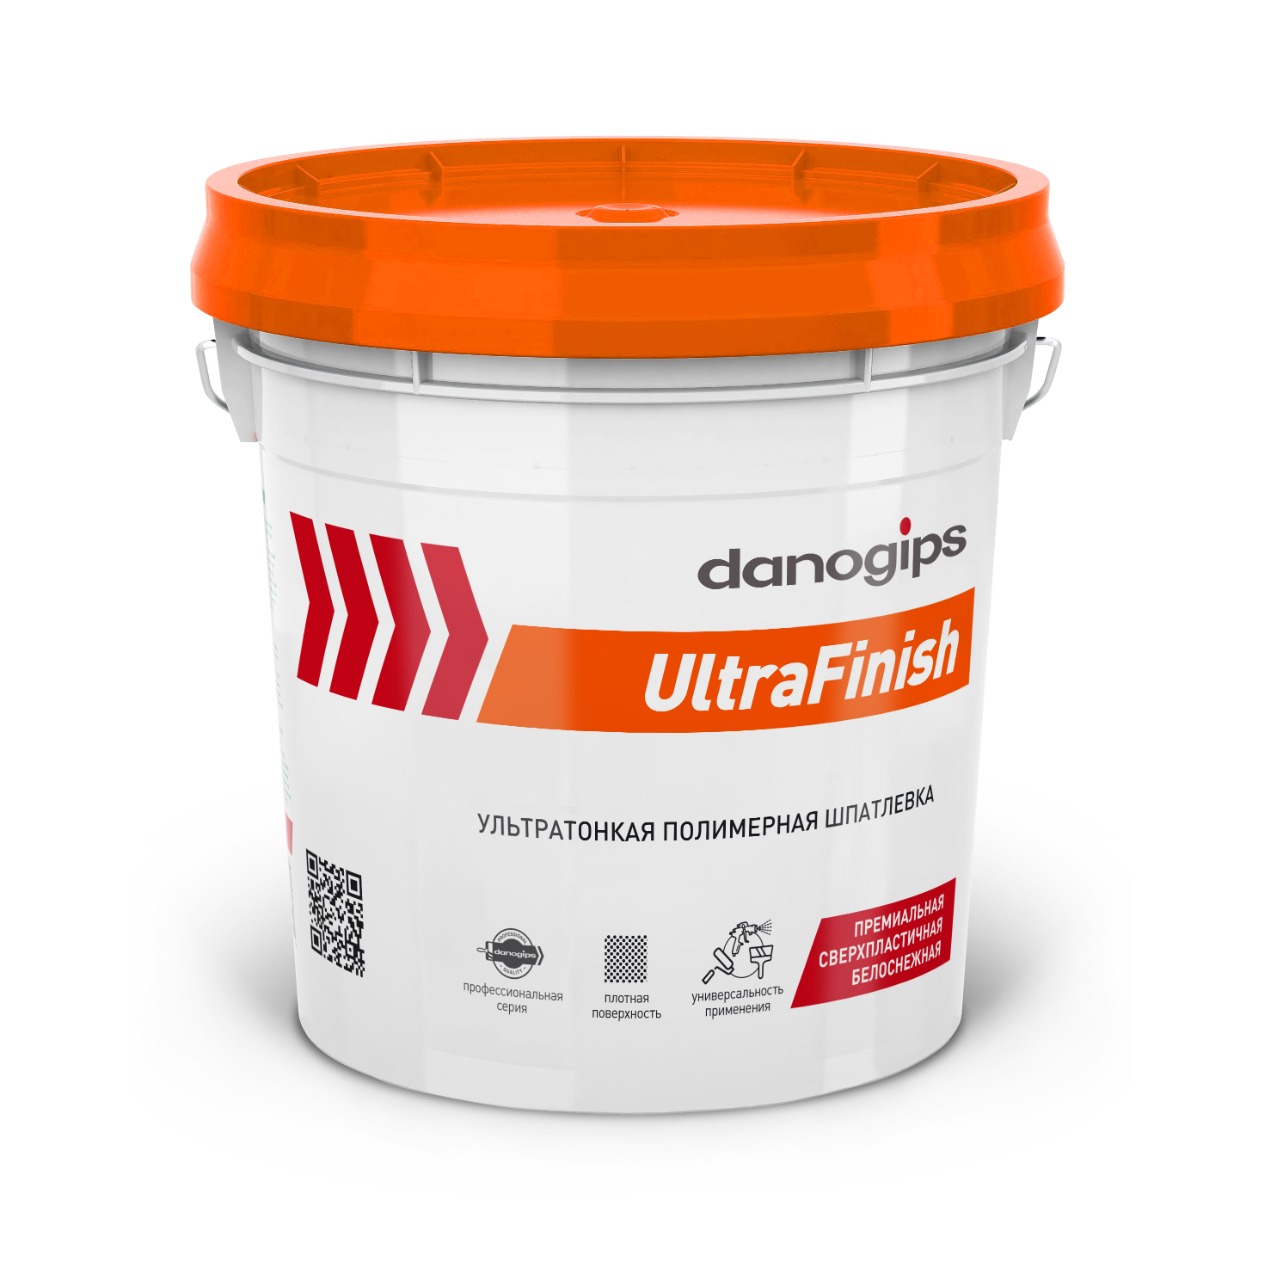 Ультратонкая финишная полимерная шпатлевка Danogips UltraFinish / Даногипс УльтраФиниш 28 кг (17 л)								